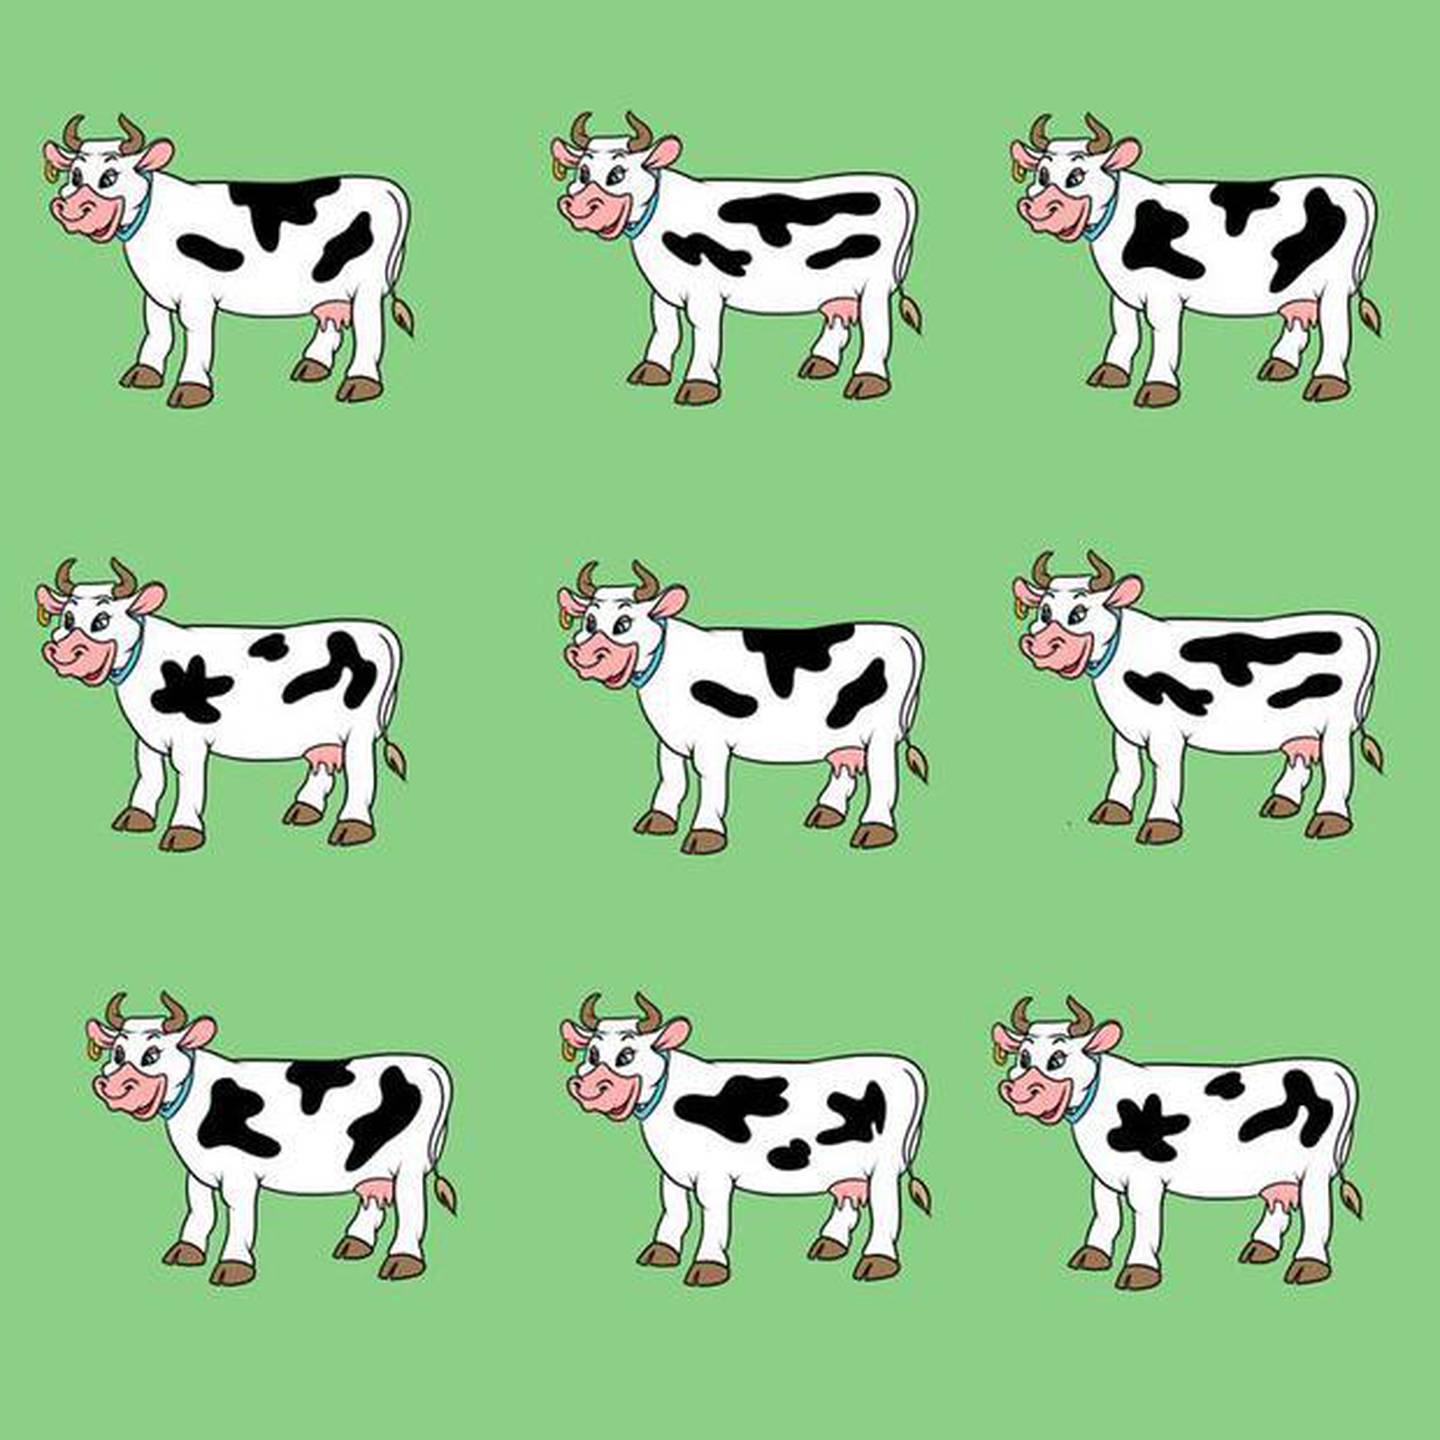 Localiza la vaca diferente.